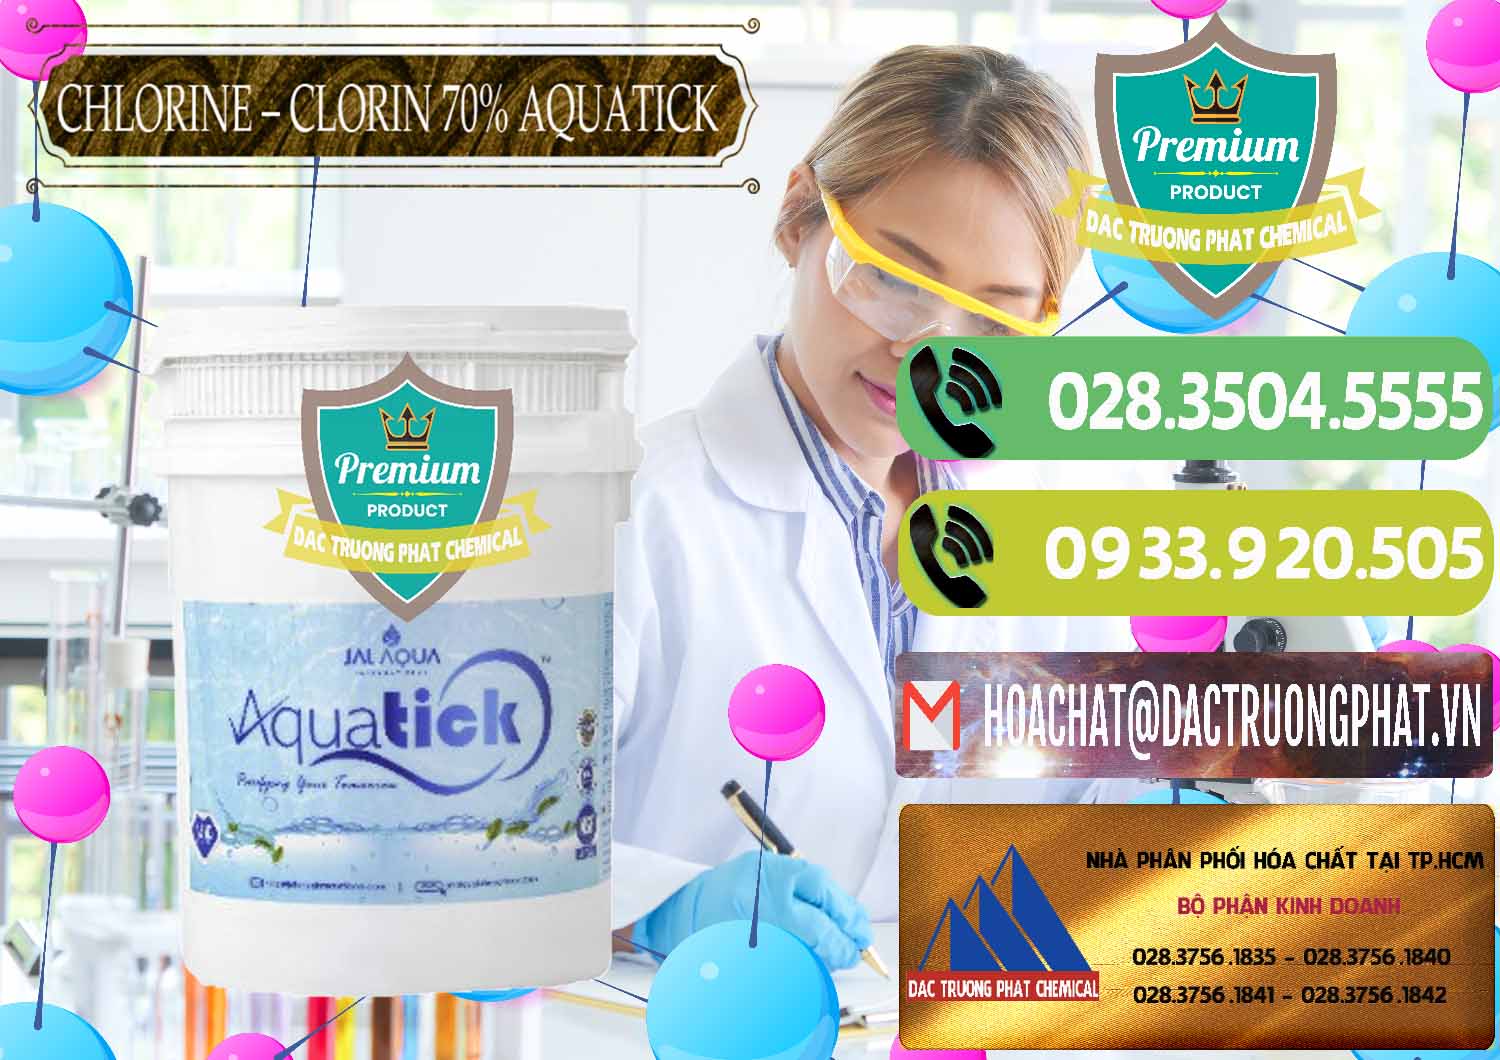 Đơn vị bán & cung cấp Chlorine – Clorin 70% Aquatick Thùng Cao Jal Aqua Ấn Độ India - 0237 - Cty chuyên kinh doanh & phân phối hóa chất tại TP.HCM - hoachatmientay.vn